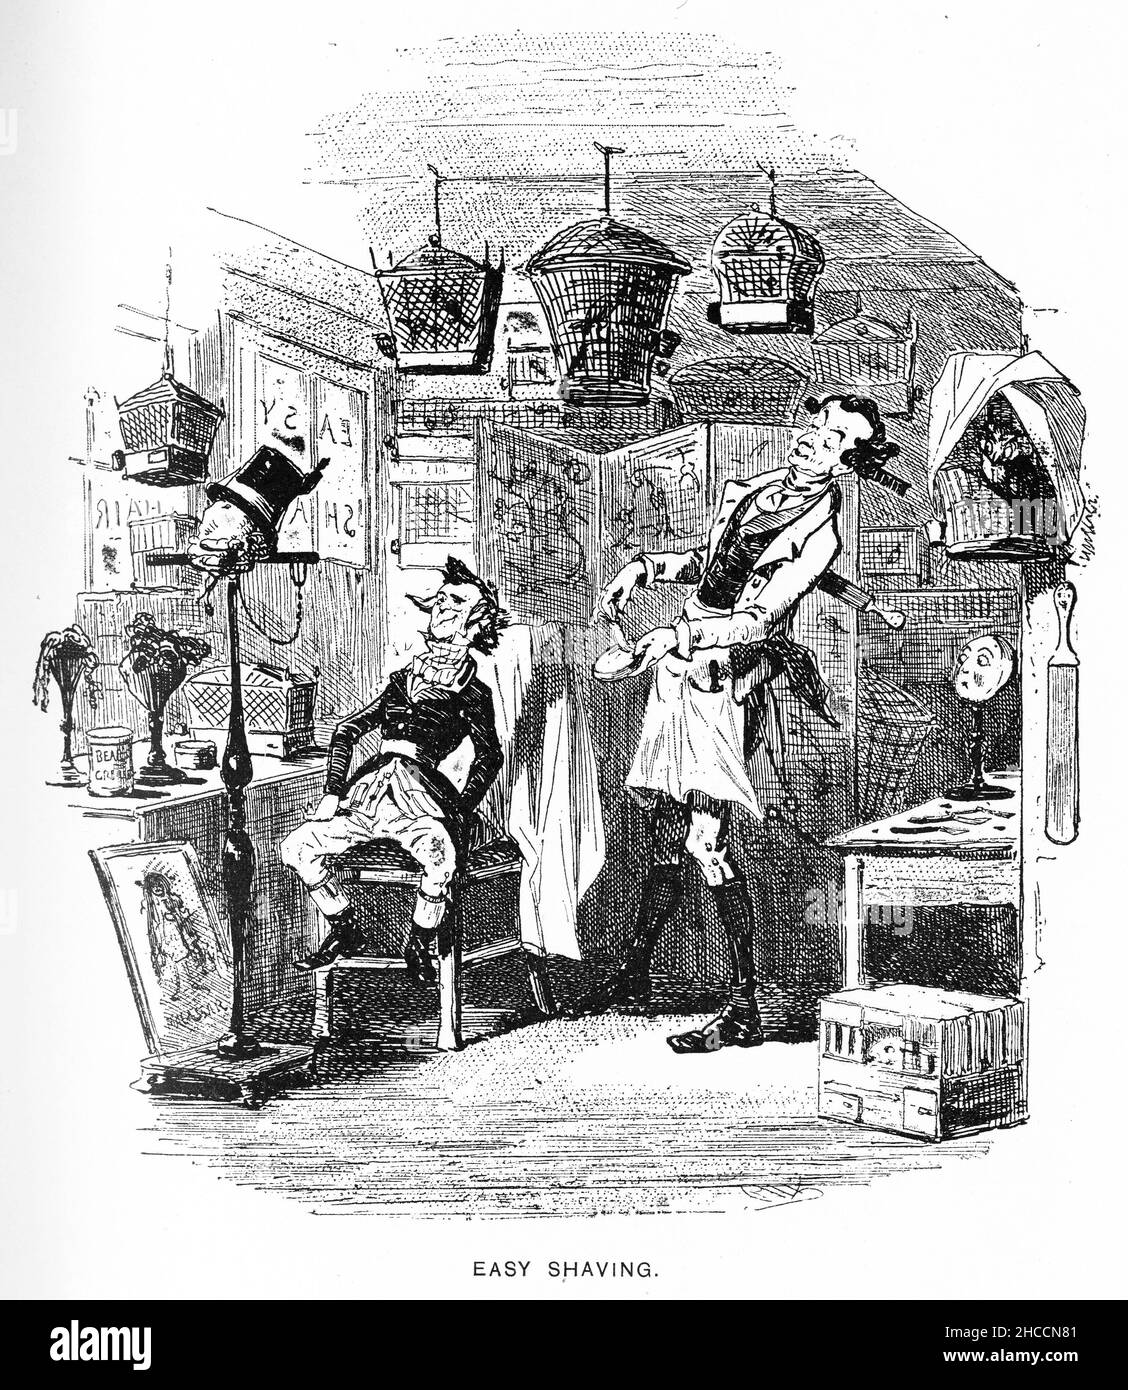 Gravure d'un barber au travail à Easy Shaving, une scène d'un livre de l'époque victorienne de Charles Dickens, publié vers 1908.Notez la réflexion dans le miroir à droite. Banque D'Images